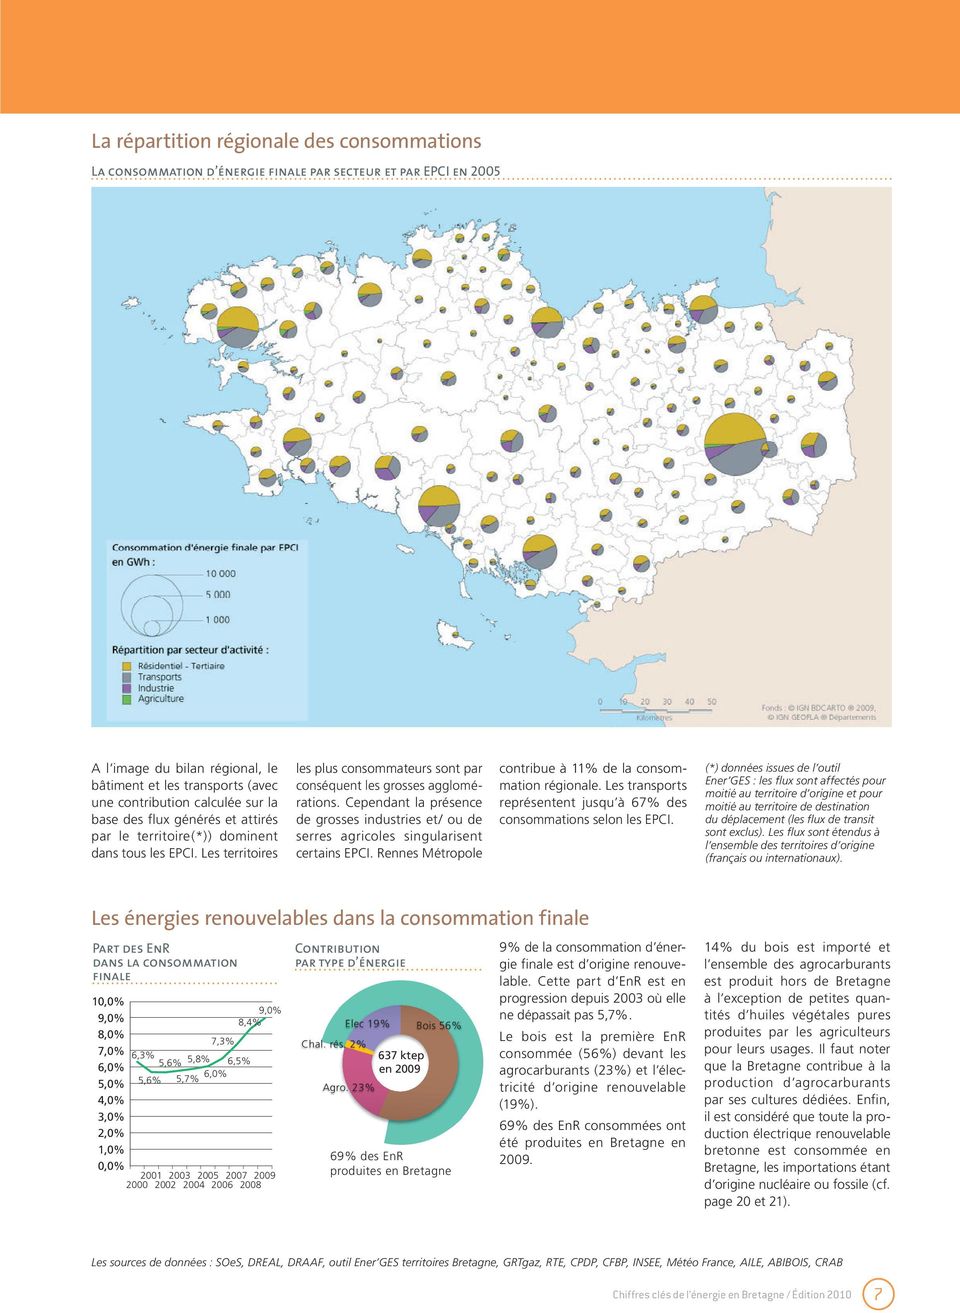 Cependant la présence de grosses industries et/ ou de serres agricoles singularisent certains EPCI. Rennes Métropole contribue à 11% de la consommation régionale.